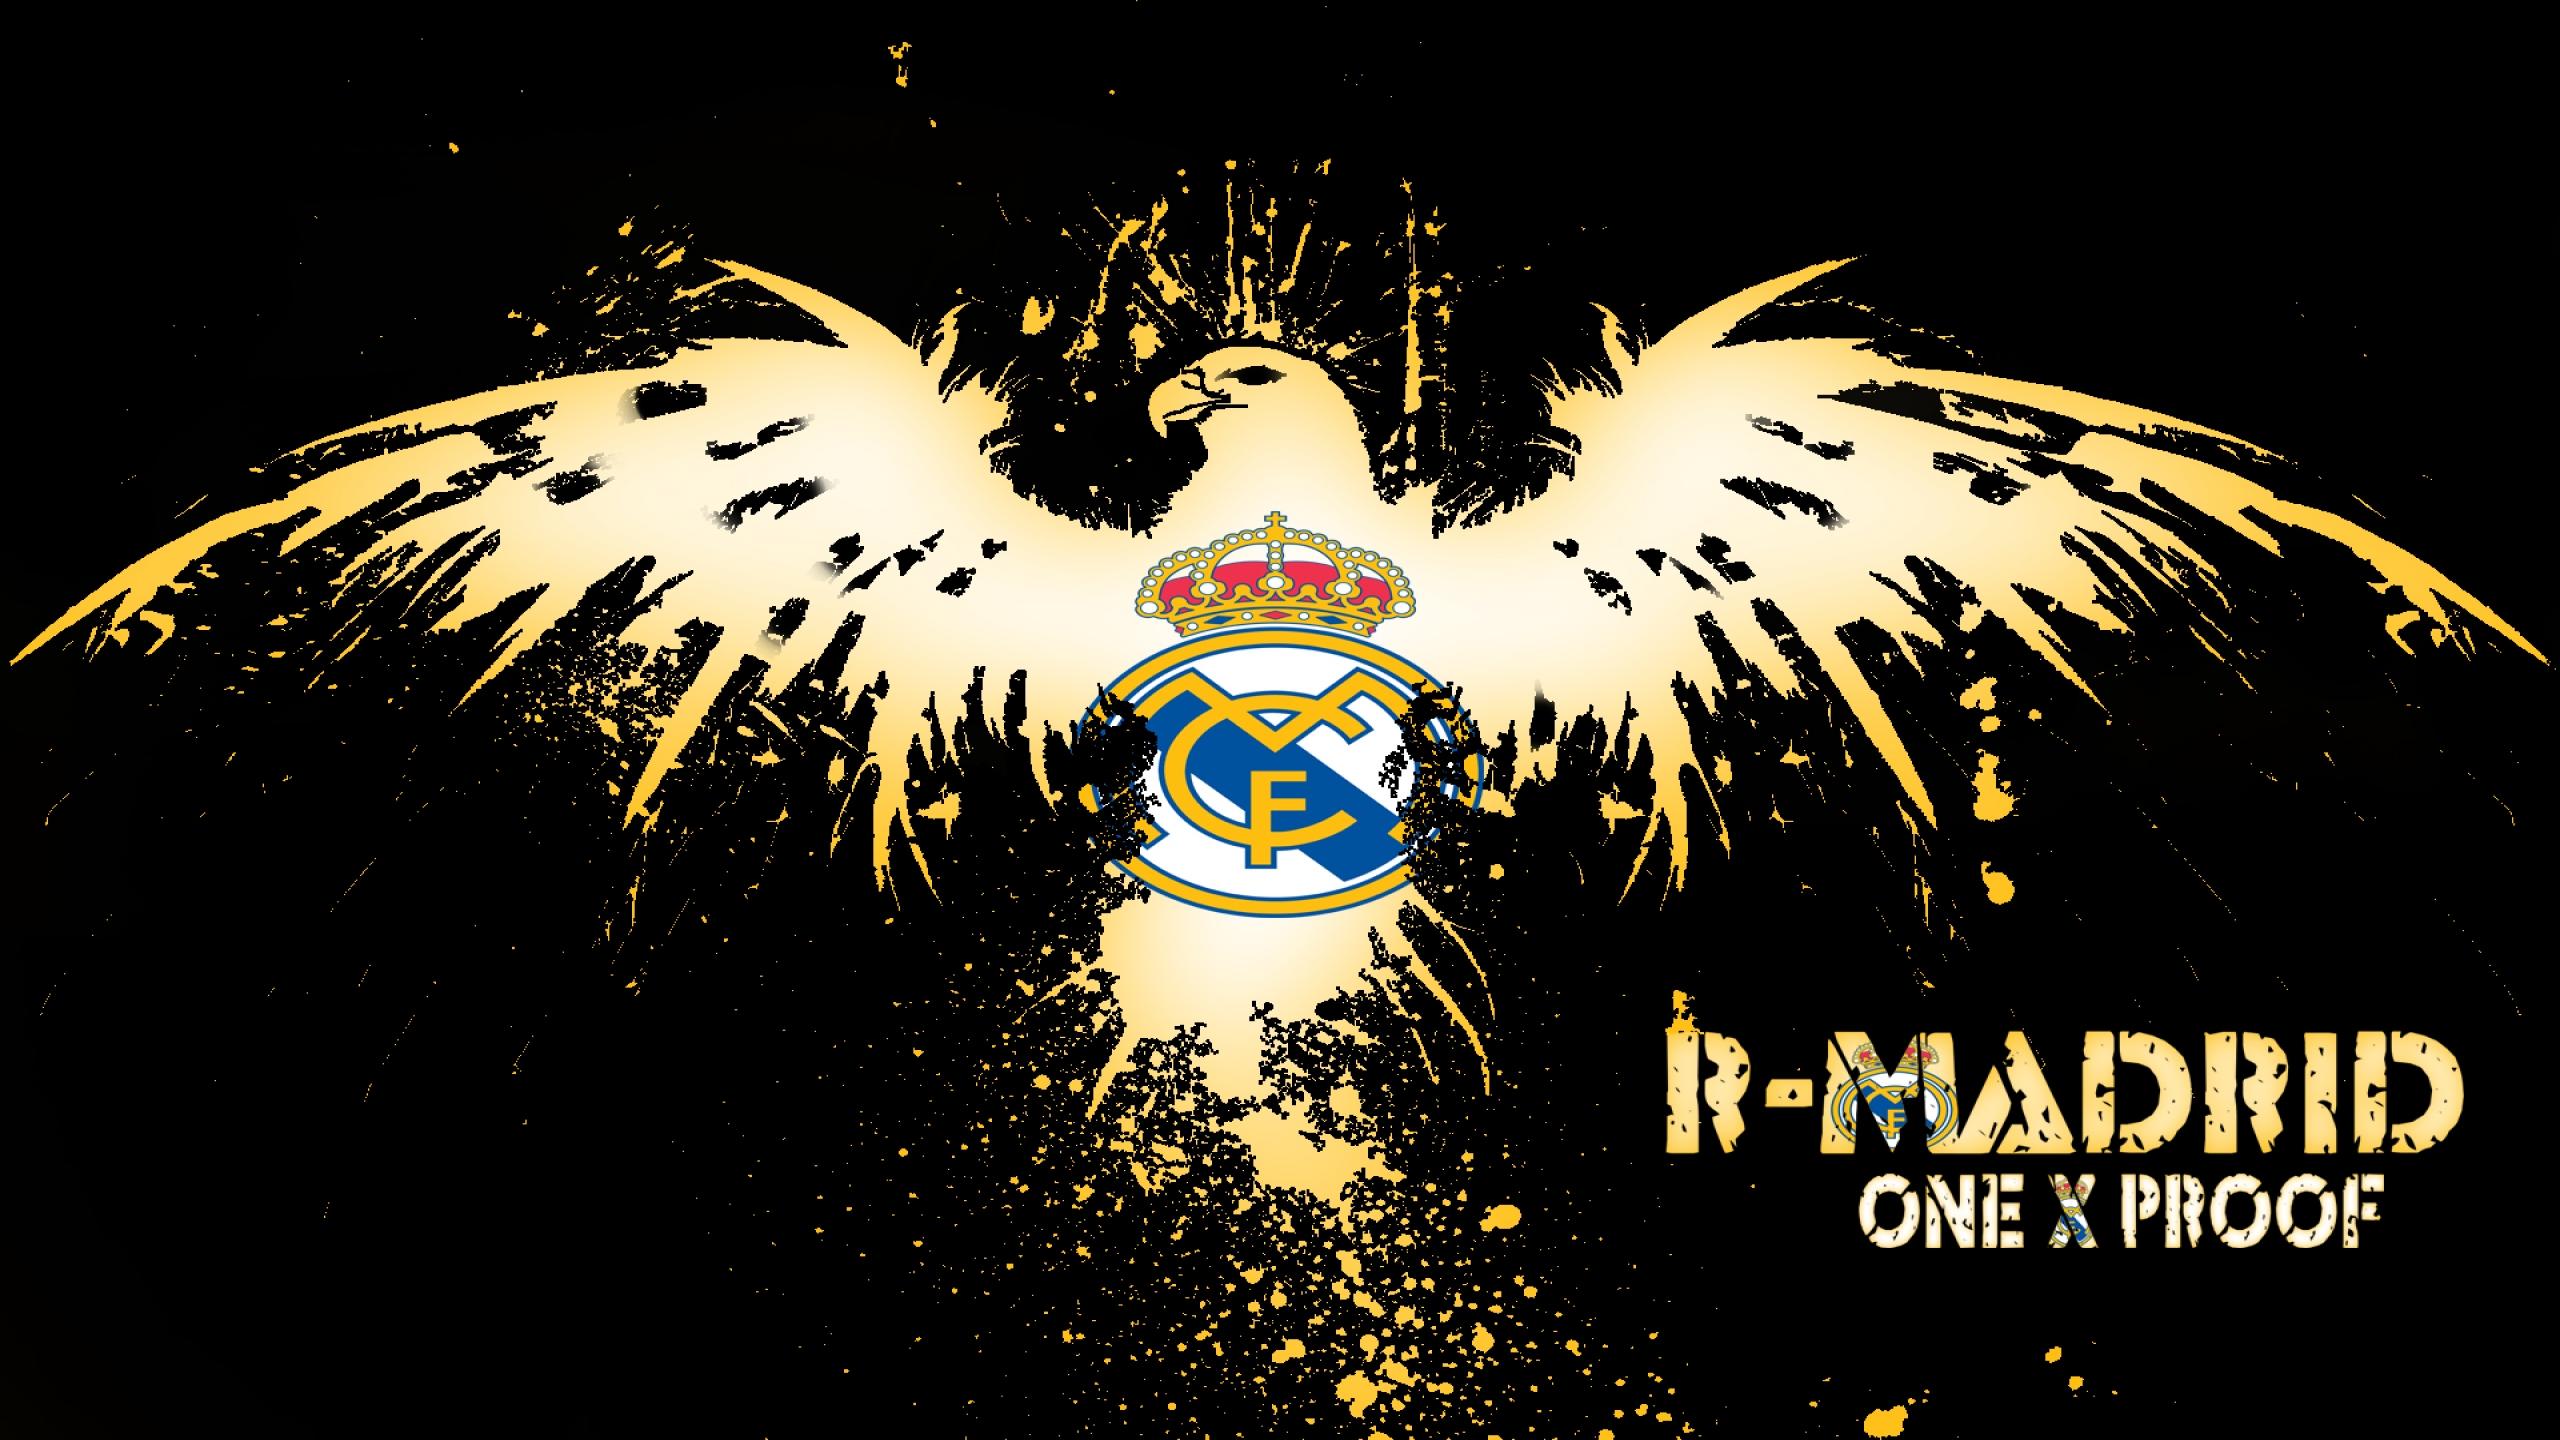 2560 x 1440 · jpeg - Real Madrid Wallpaper HD free download | PixelsTalk